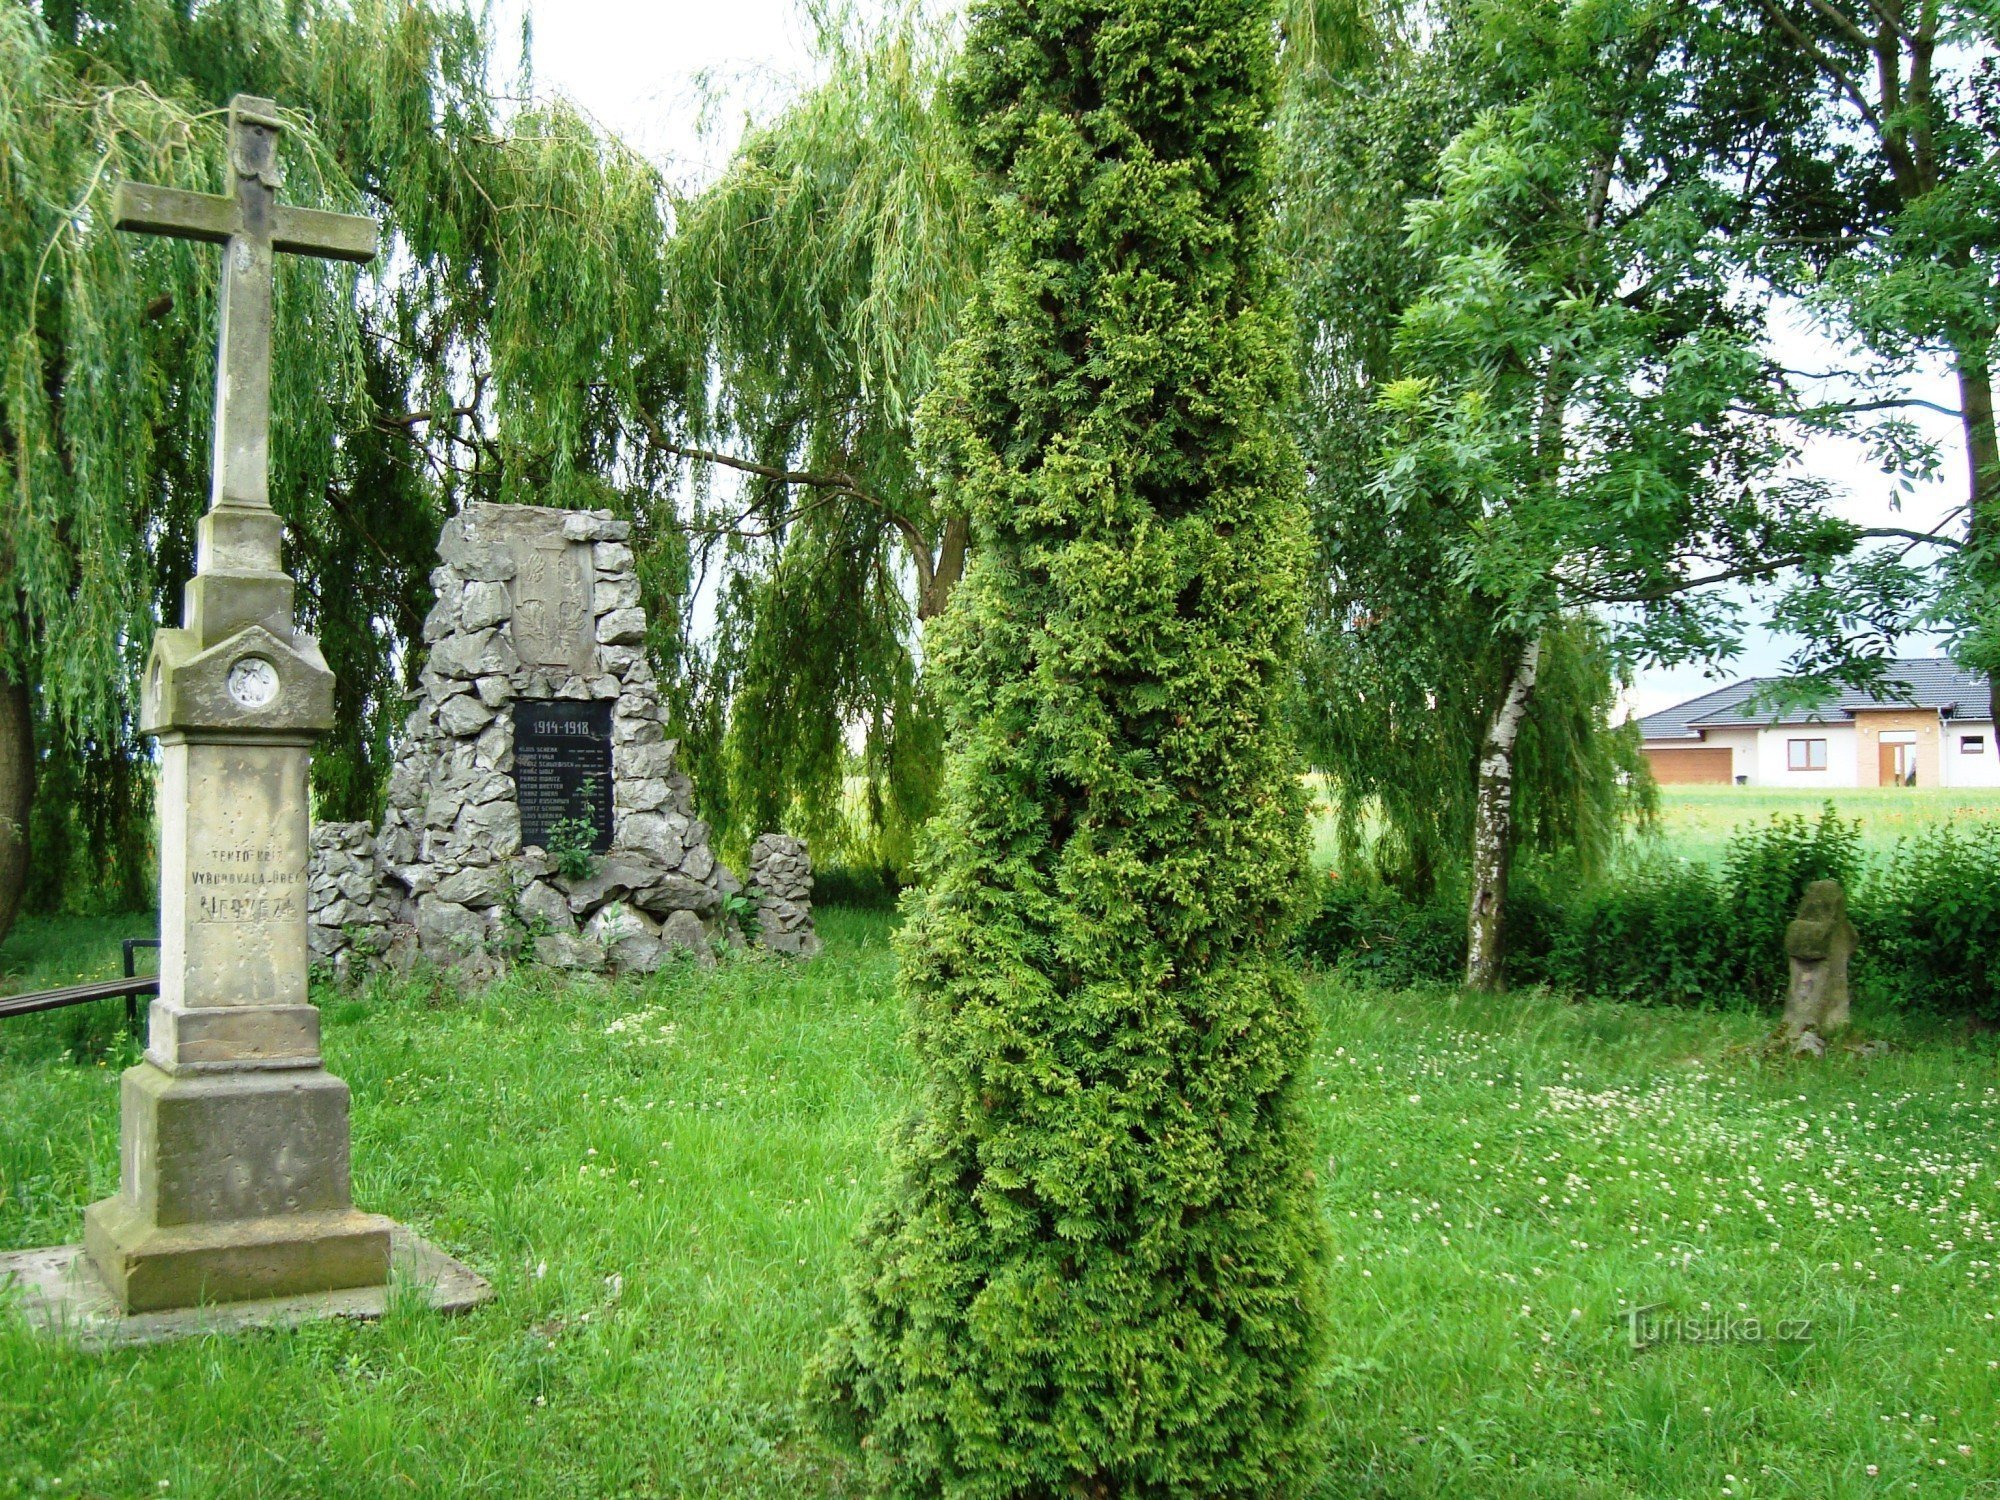 Parque Nedvězí no início da aldeia com cruz de reconciliação, cruz de pedra de 1869 e pom